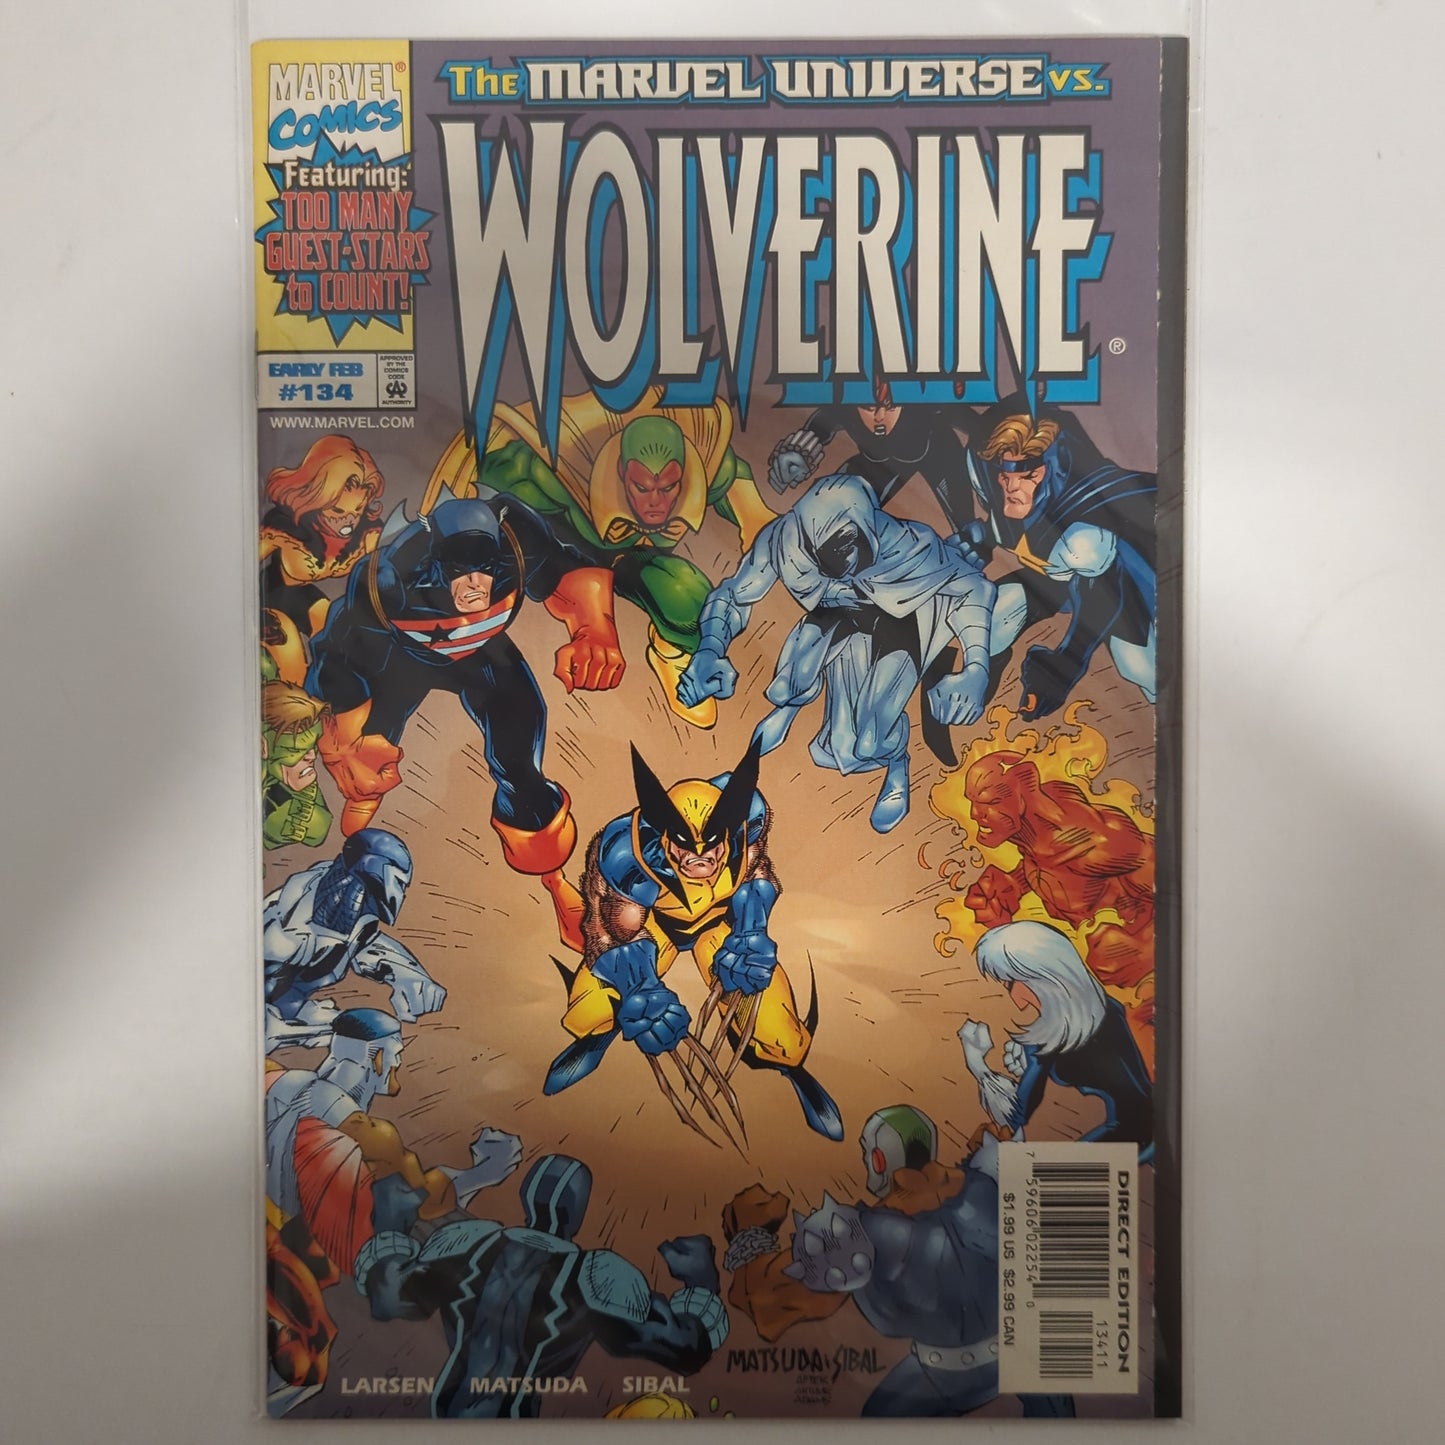 Wolverine #134